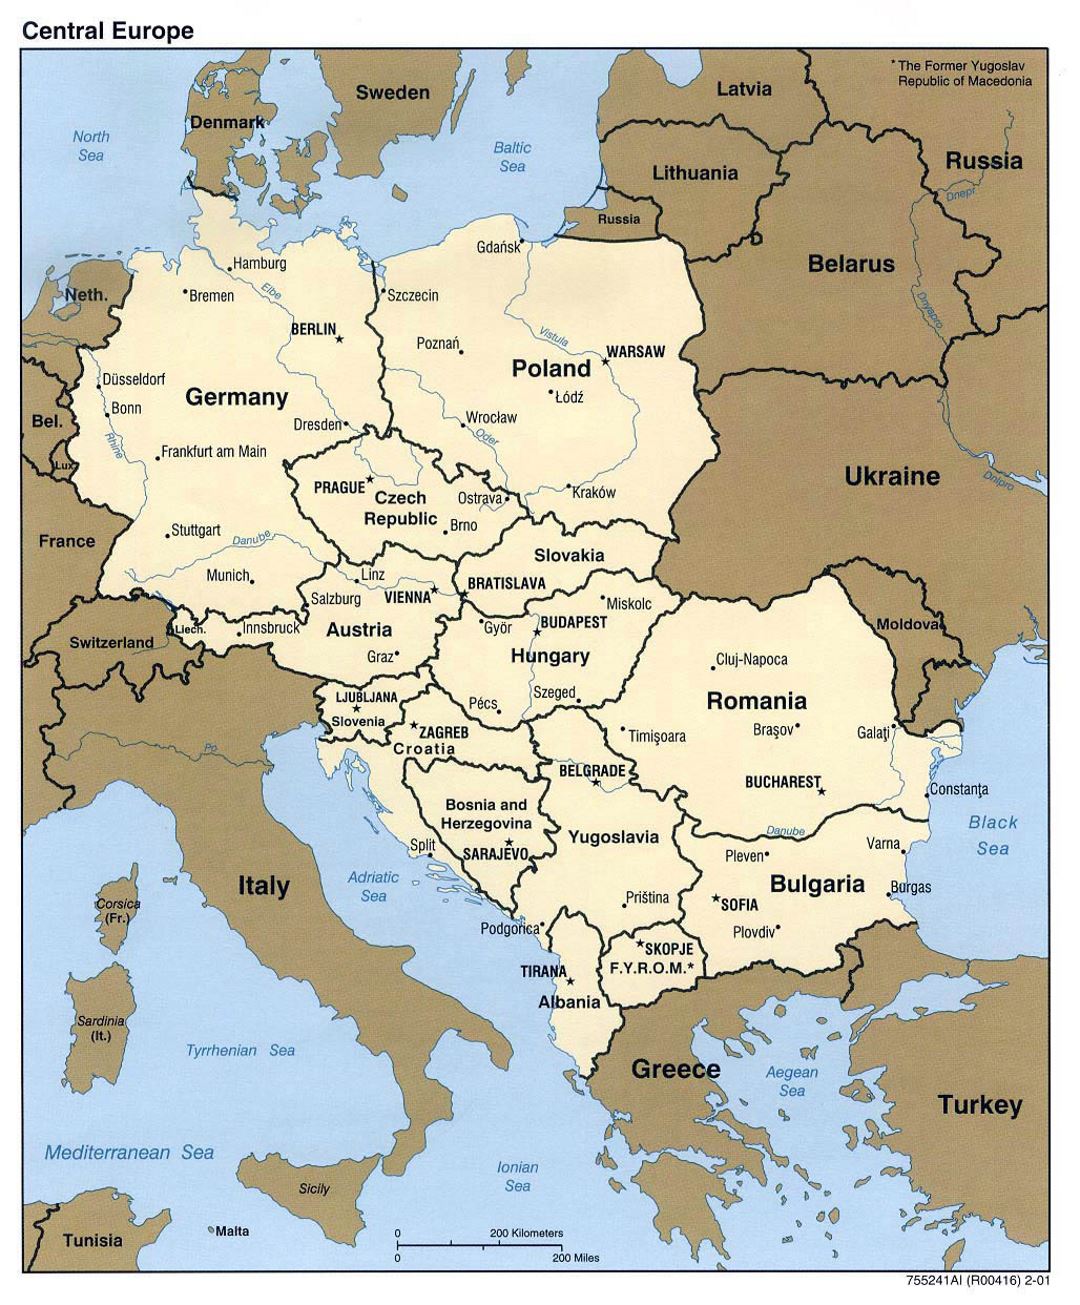 Mapa político detallado de Europa Central - 2001